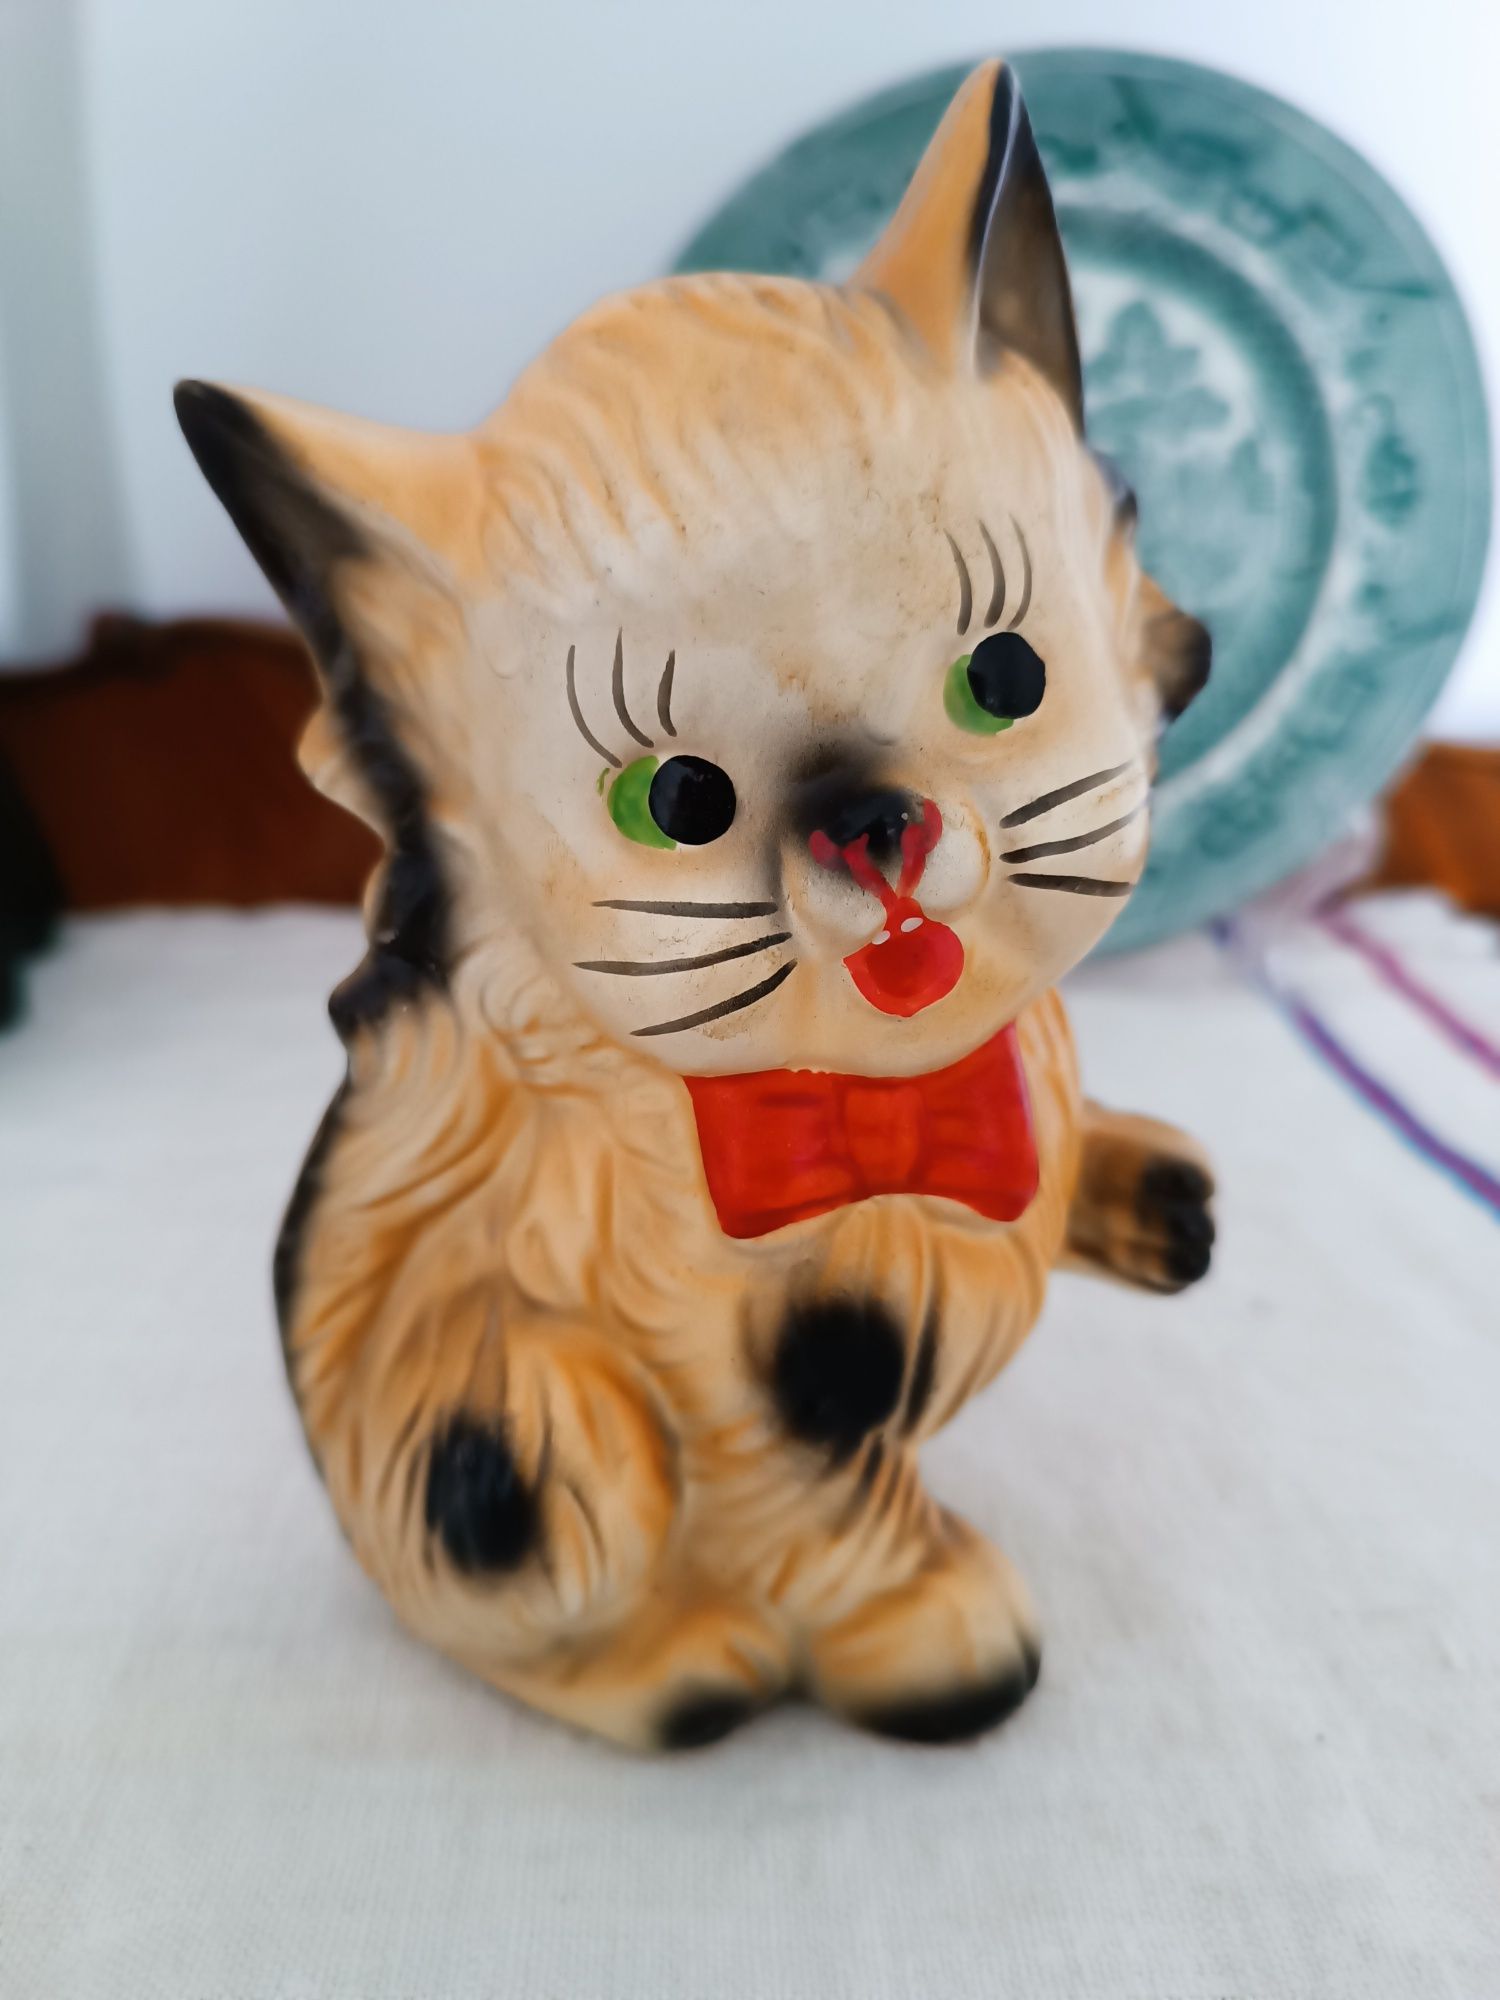 Mealheiro gatinho de cerâmica, dos anos 60
Encontra-se em excelente e